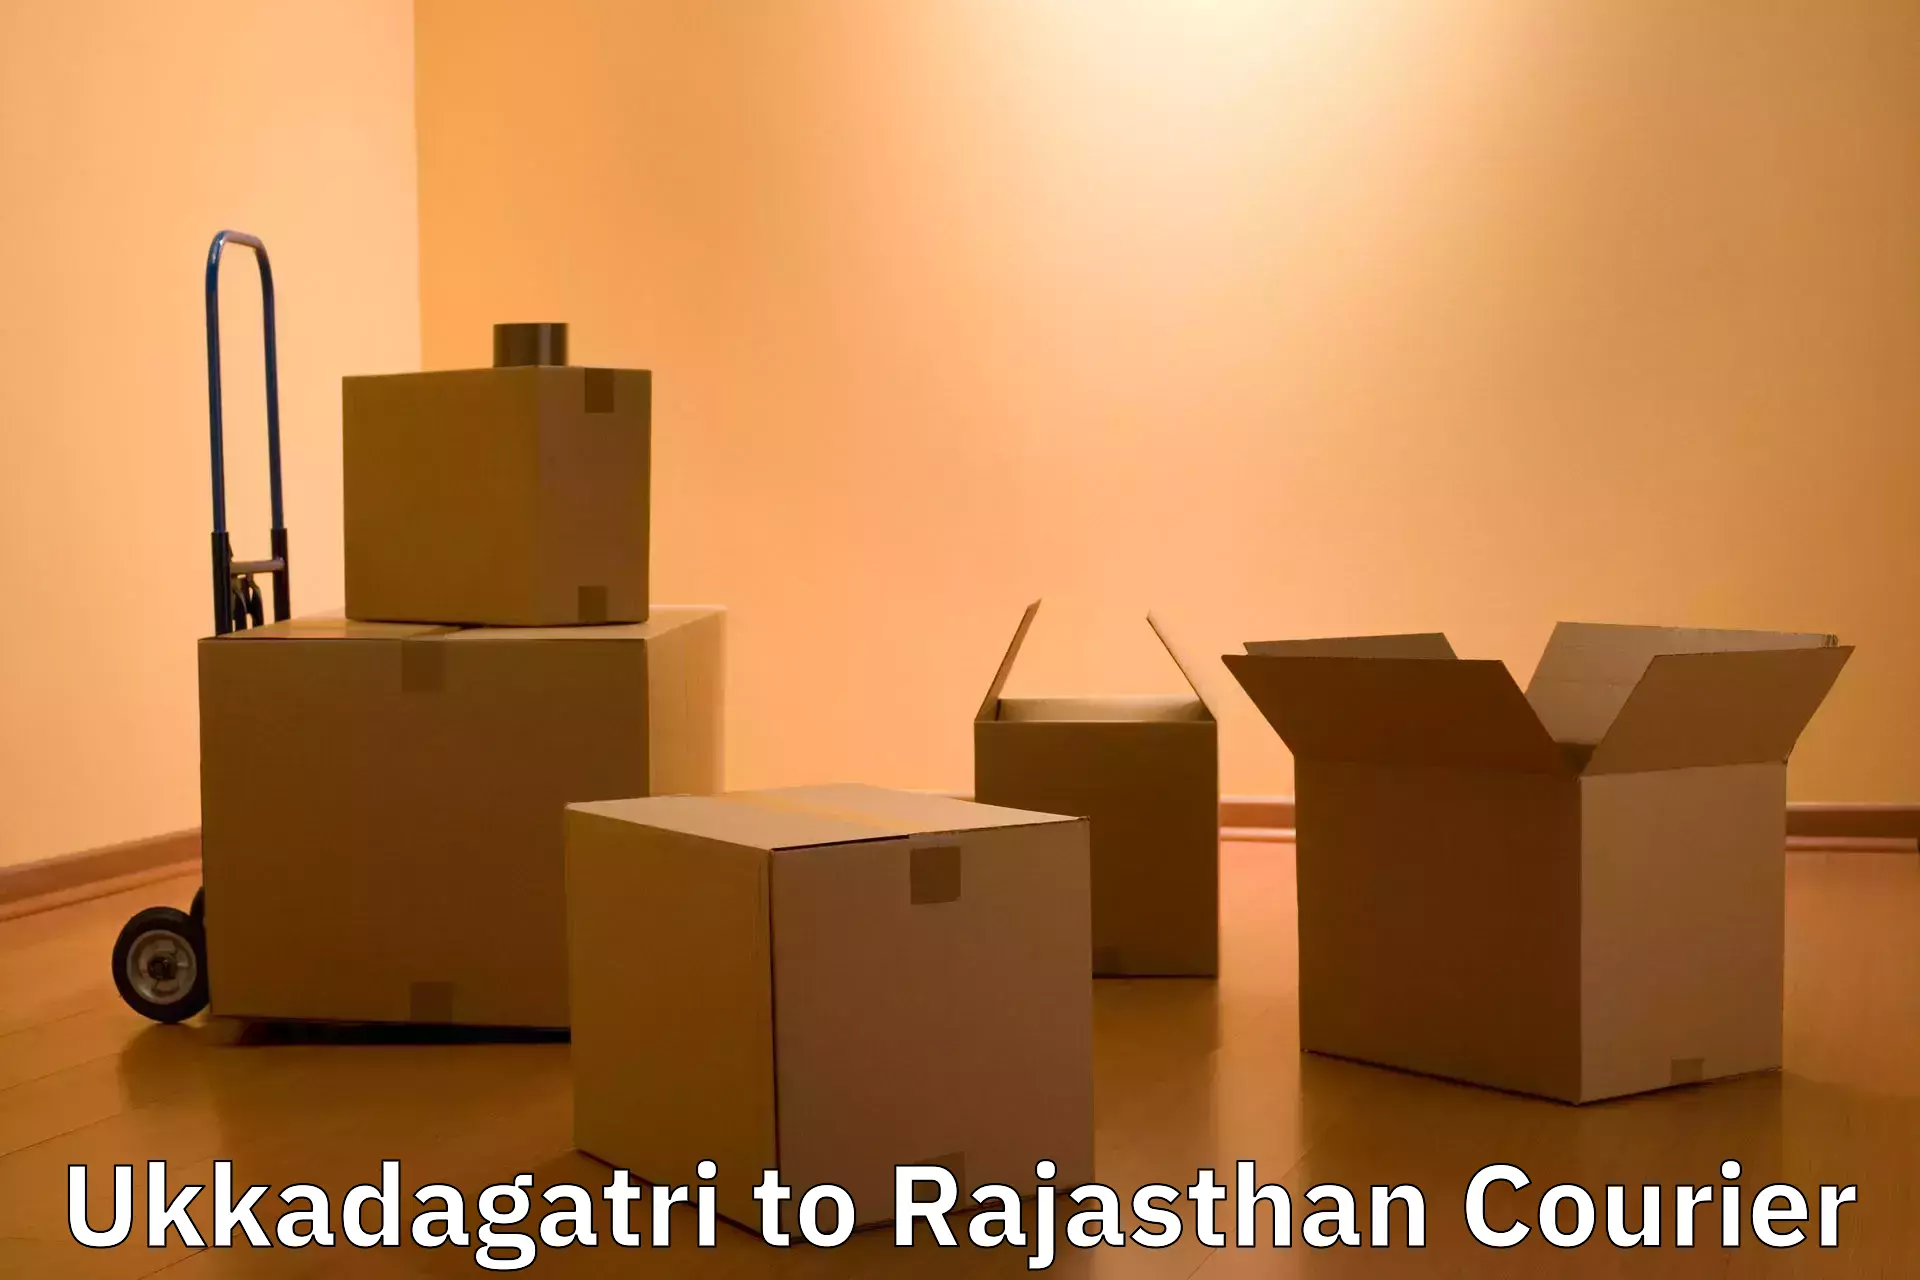 Baggage transport management in Ukkadagatri to Rajasthan